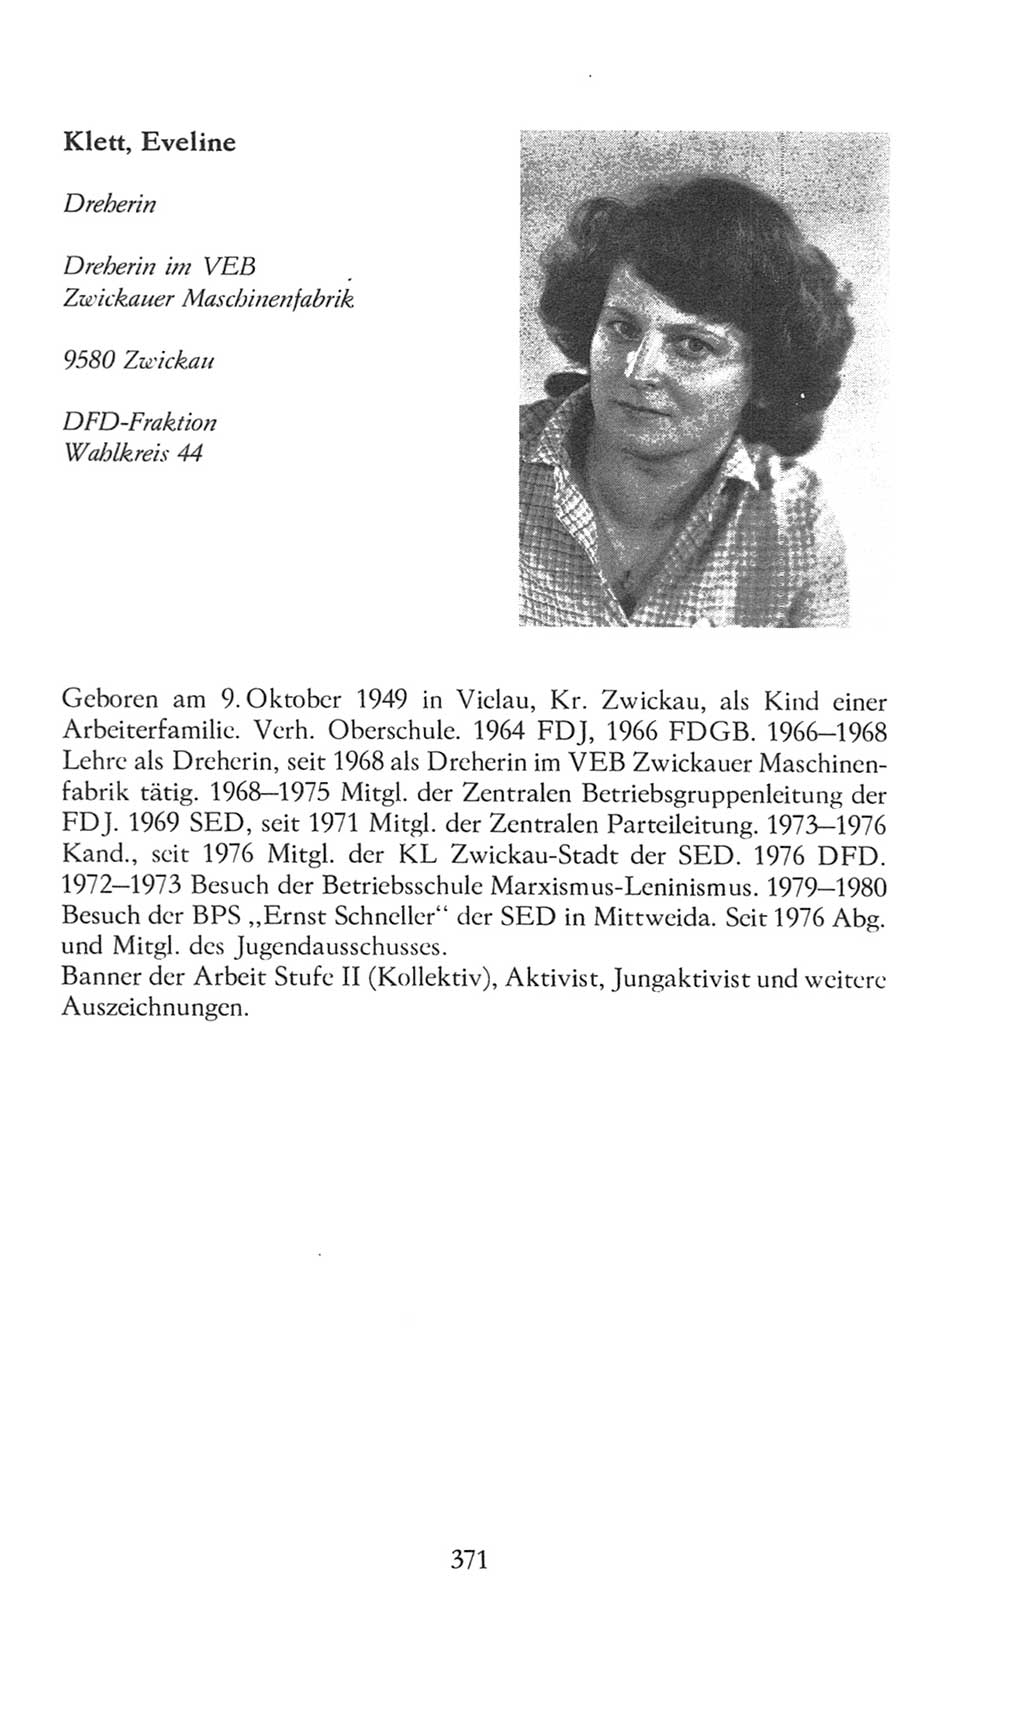 Volkskammer (VK) der Deutschen Demokratischen Republik (DDR), 8. Wahlperiode 1981-1986, Seite 371 (VK. DDR 8. WP. 1981-1986, S. 371)